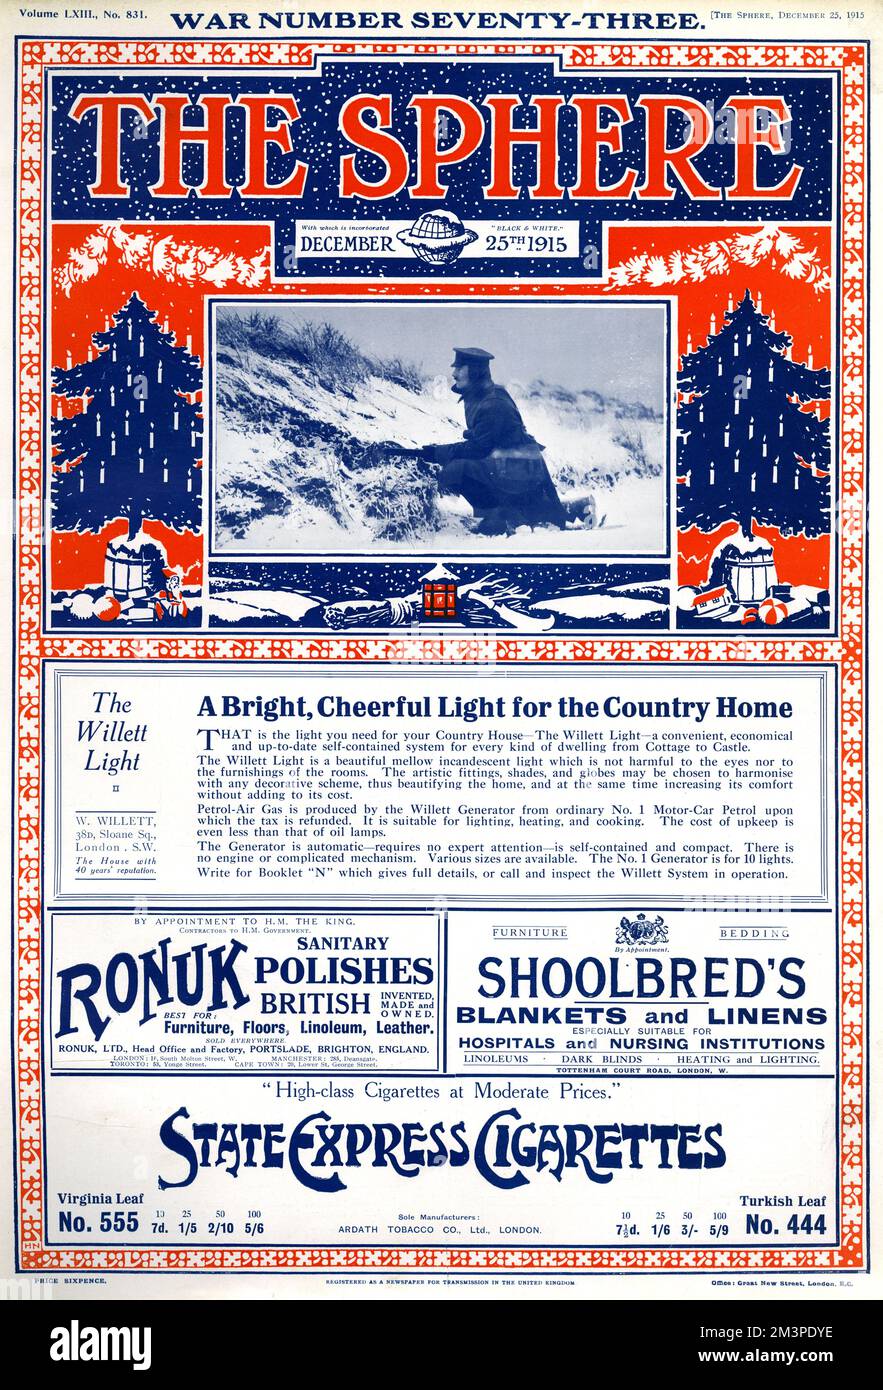 Titelseite der Kugel für Weihnachten 1915, mit zwei Weihnachtsbäumen, einem Foto eines Soldaten im Schnee und Werbung für das Willett Light, Ronuk-Polituren, Shoolbred's Decken und Bettwäsche und State Express Zigaretten. Stockfoto